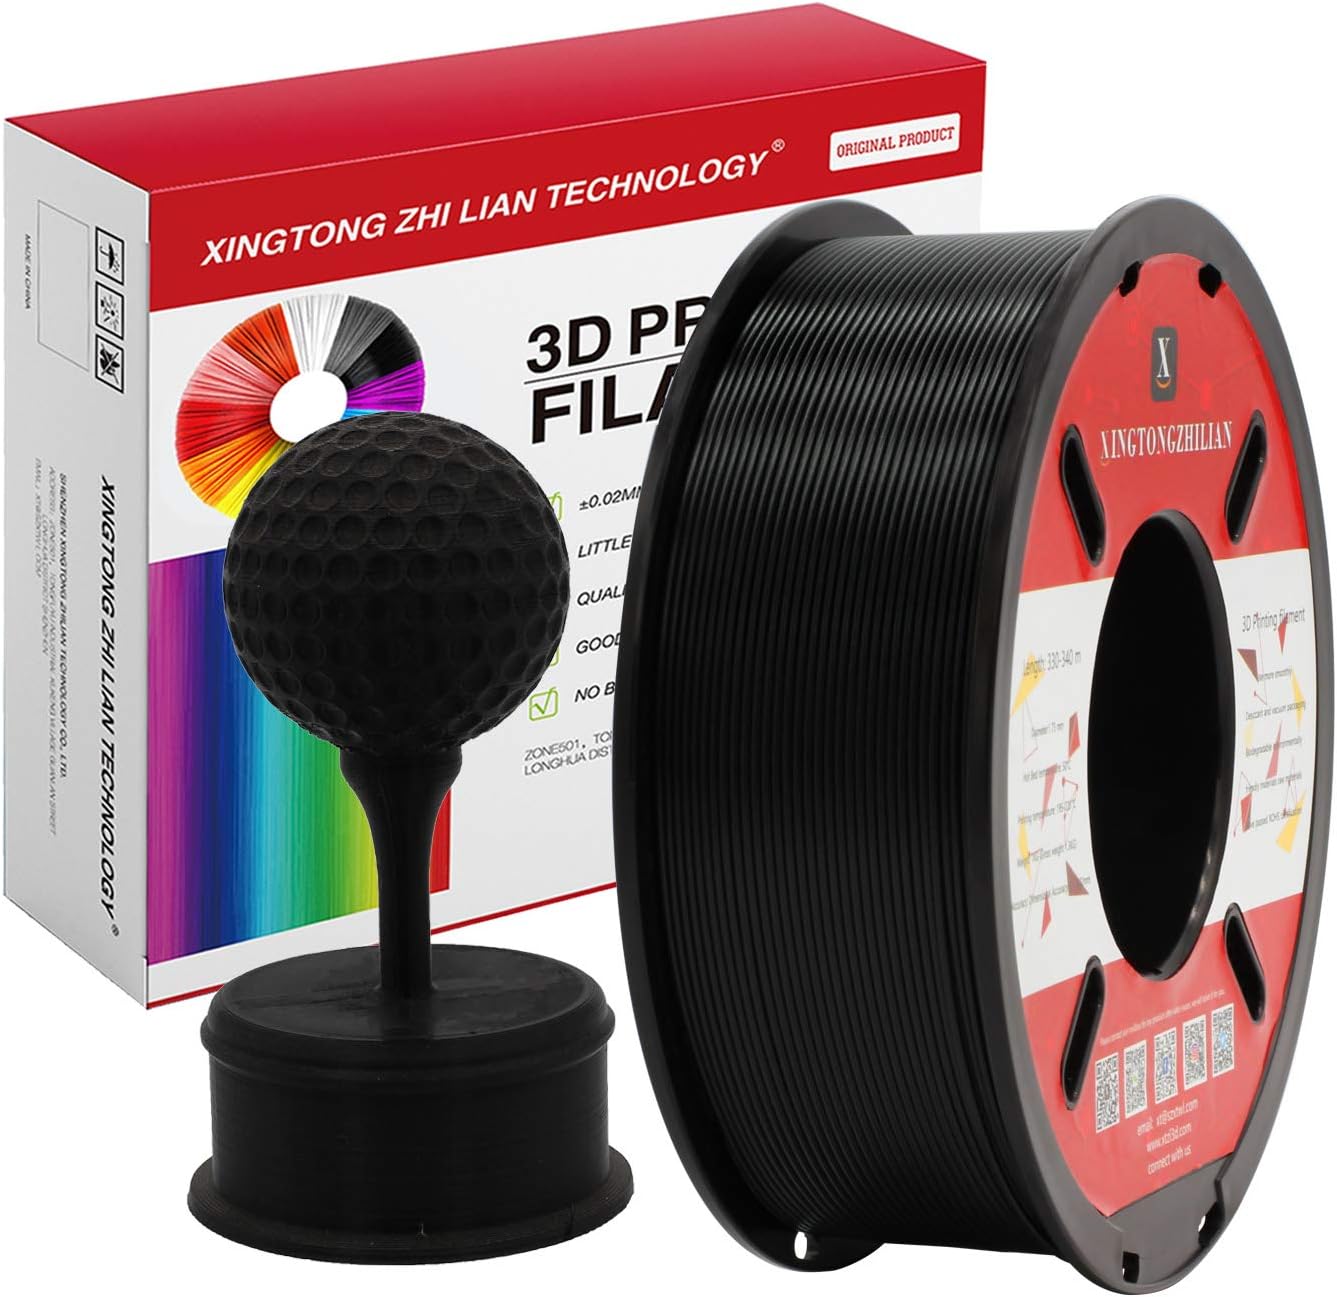 Filamento PLA normal de 1.75 mm de diámetro para impresión 3D y/o lápiz 3D de alta calidad. 1 KG. 1 carrete color NEGRO PLA normal.